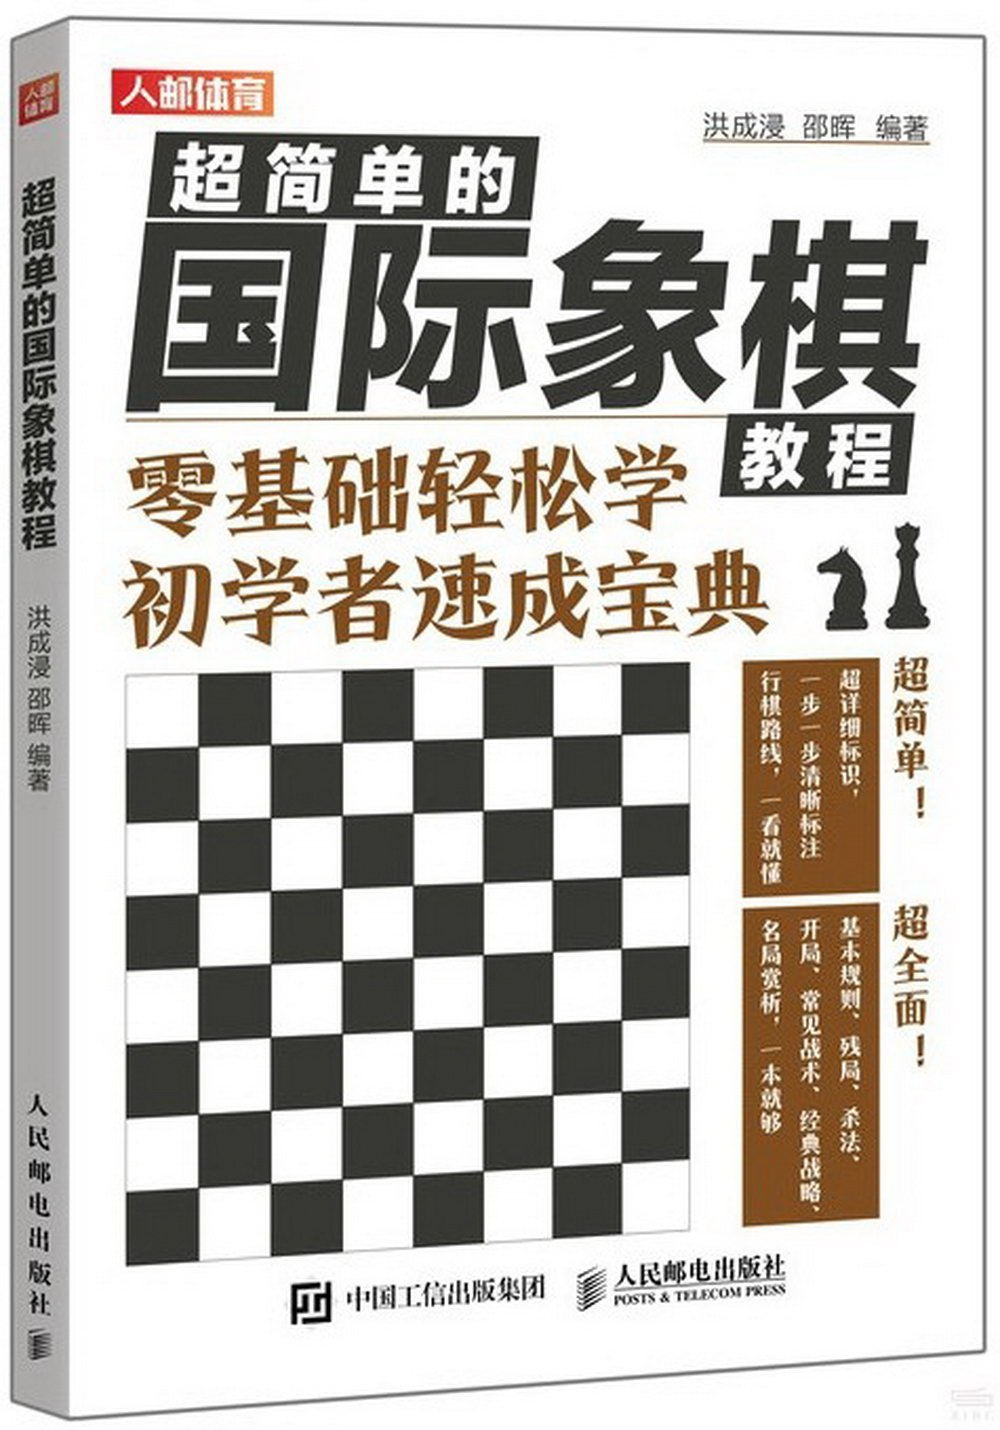 超簡單的國際象棋教程：零基礎輕鬆學 初學者速成寶典